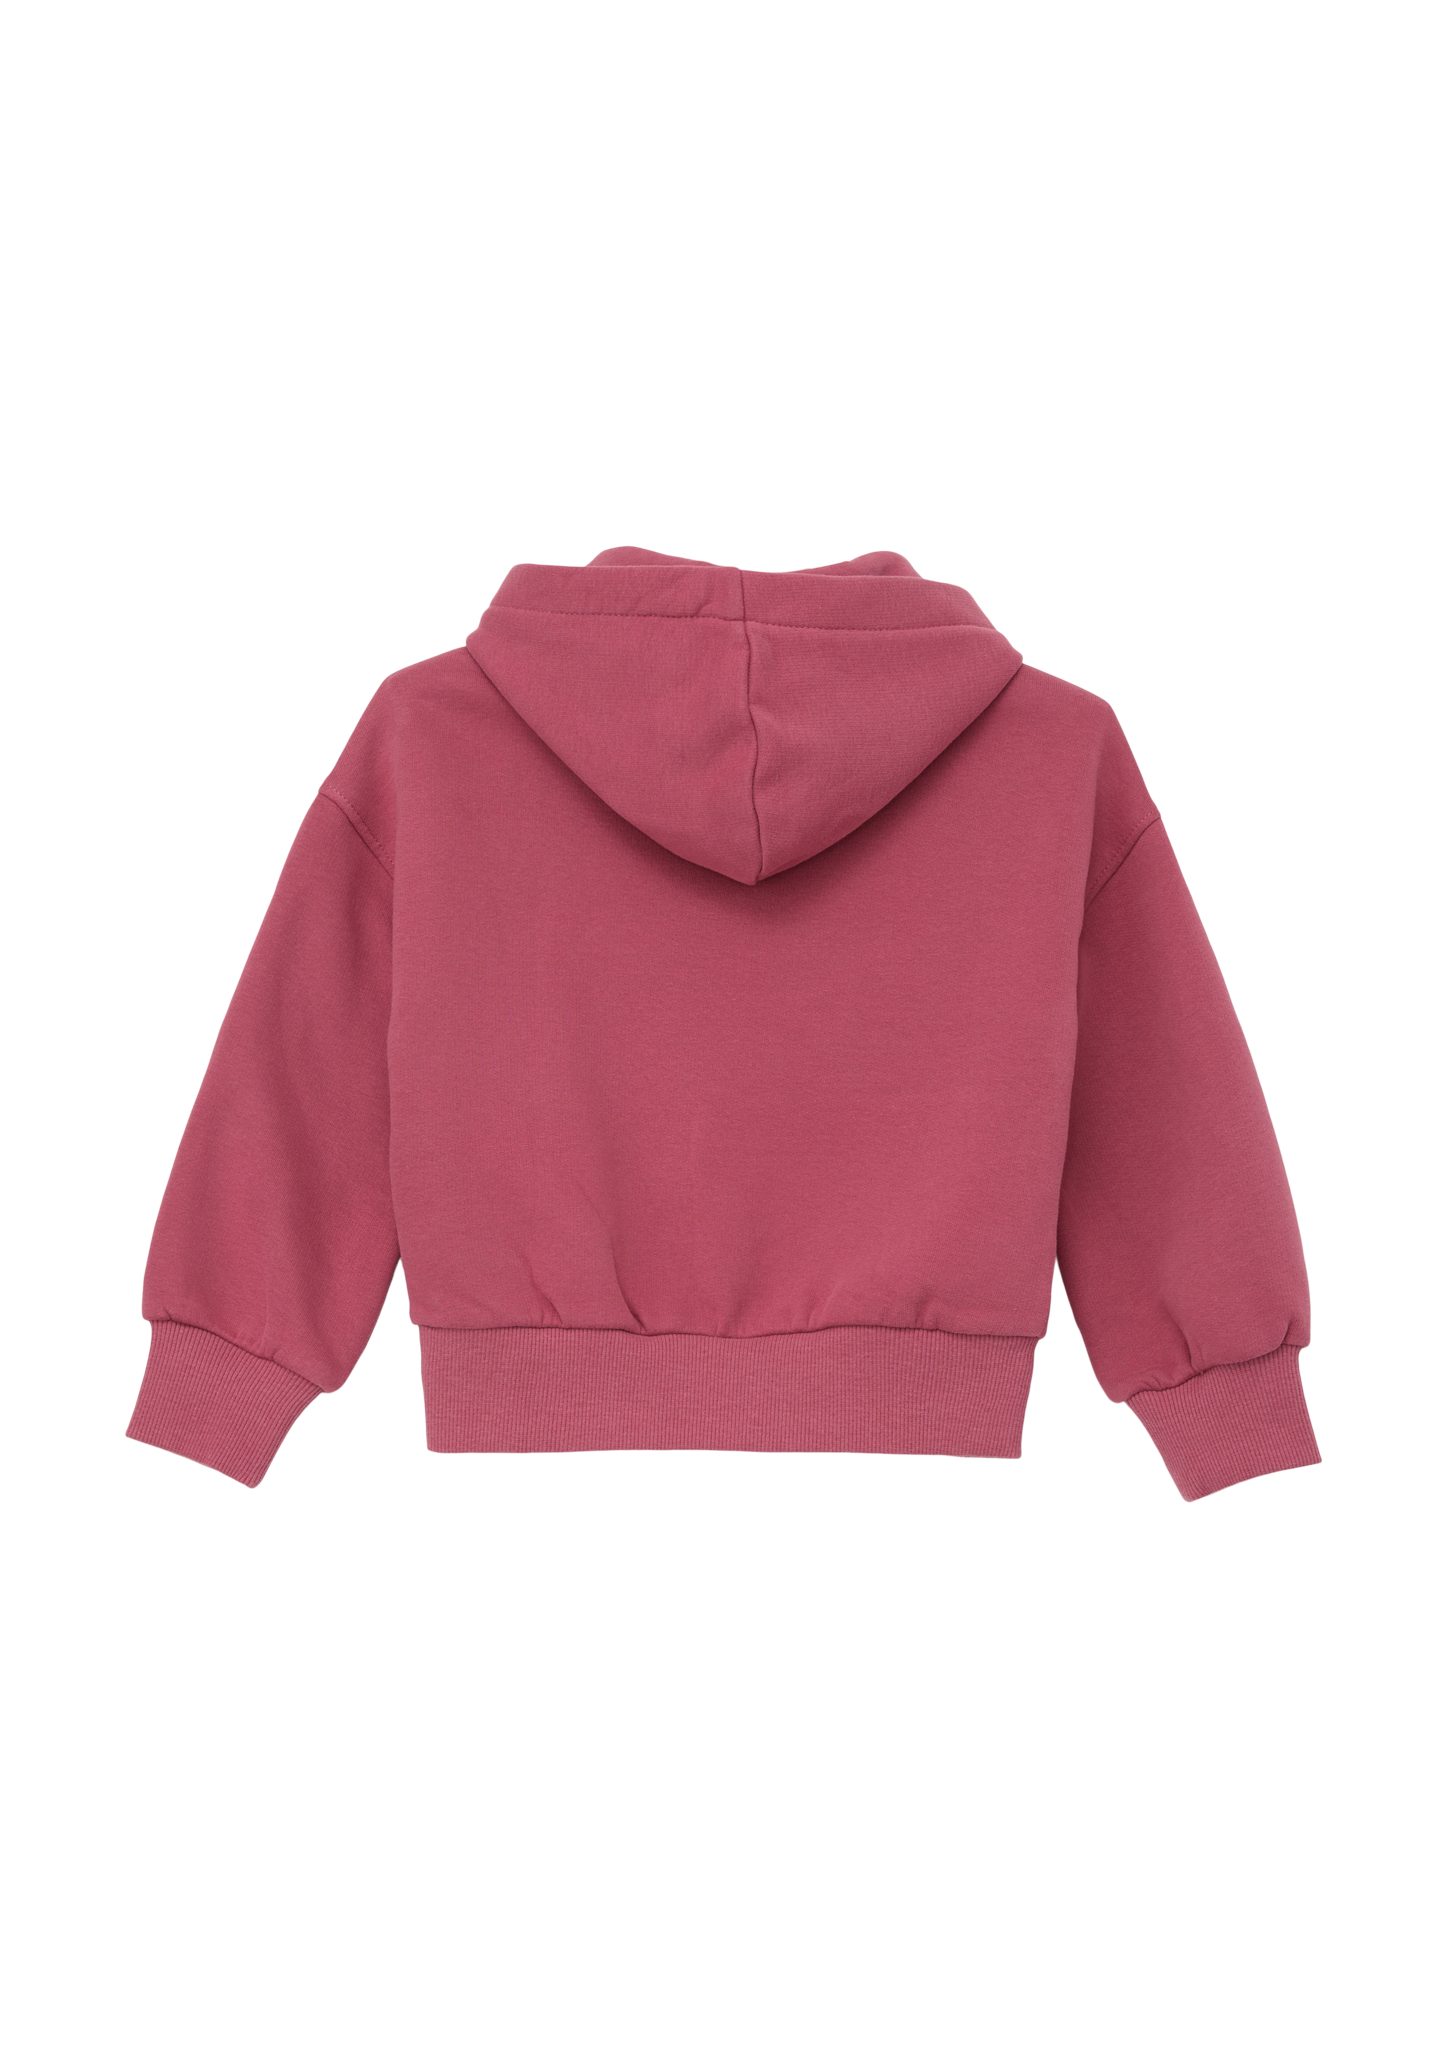 s.Oliver Sweatshirt mit Pailletten Sweatshirt pink Pailletten-Stern